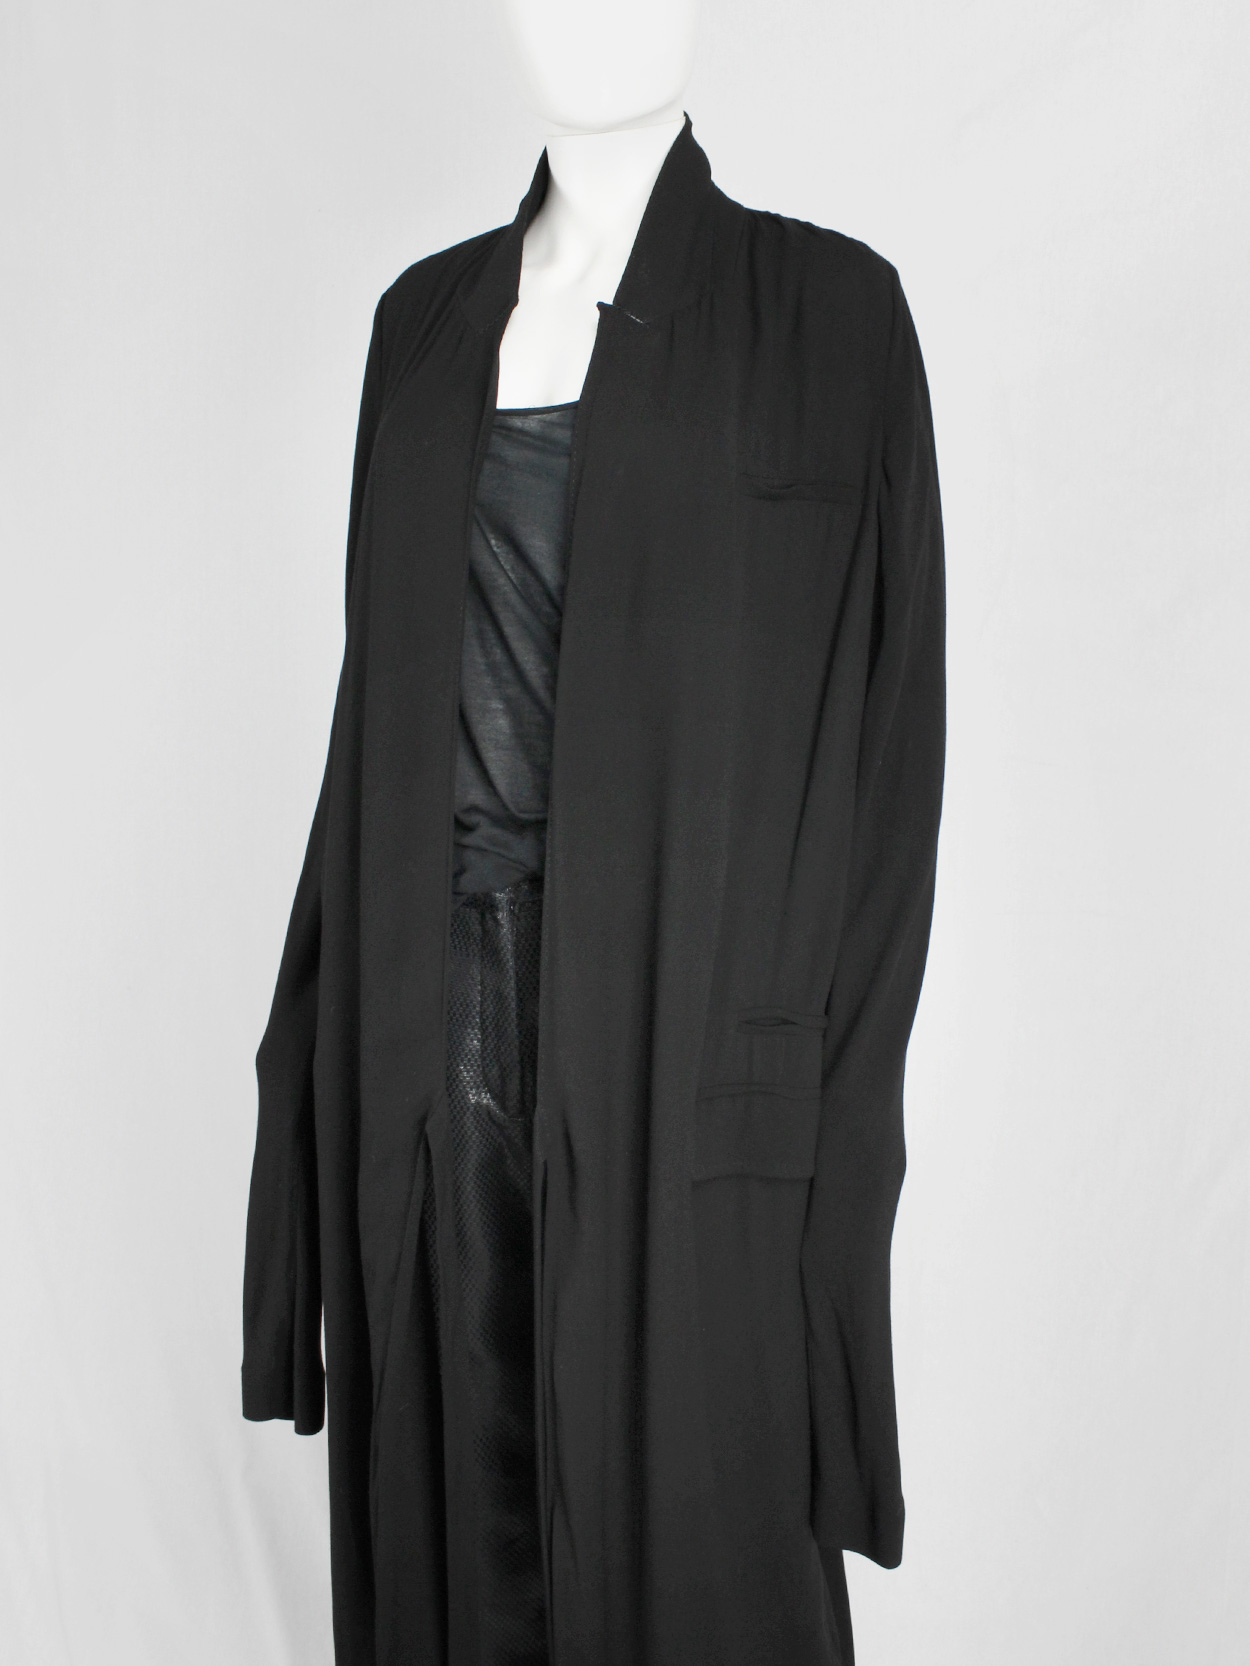 vaniitas vintage Haider Ackermann black minimalist dress or maxi cardigan 8499